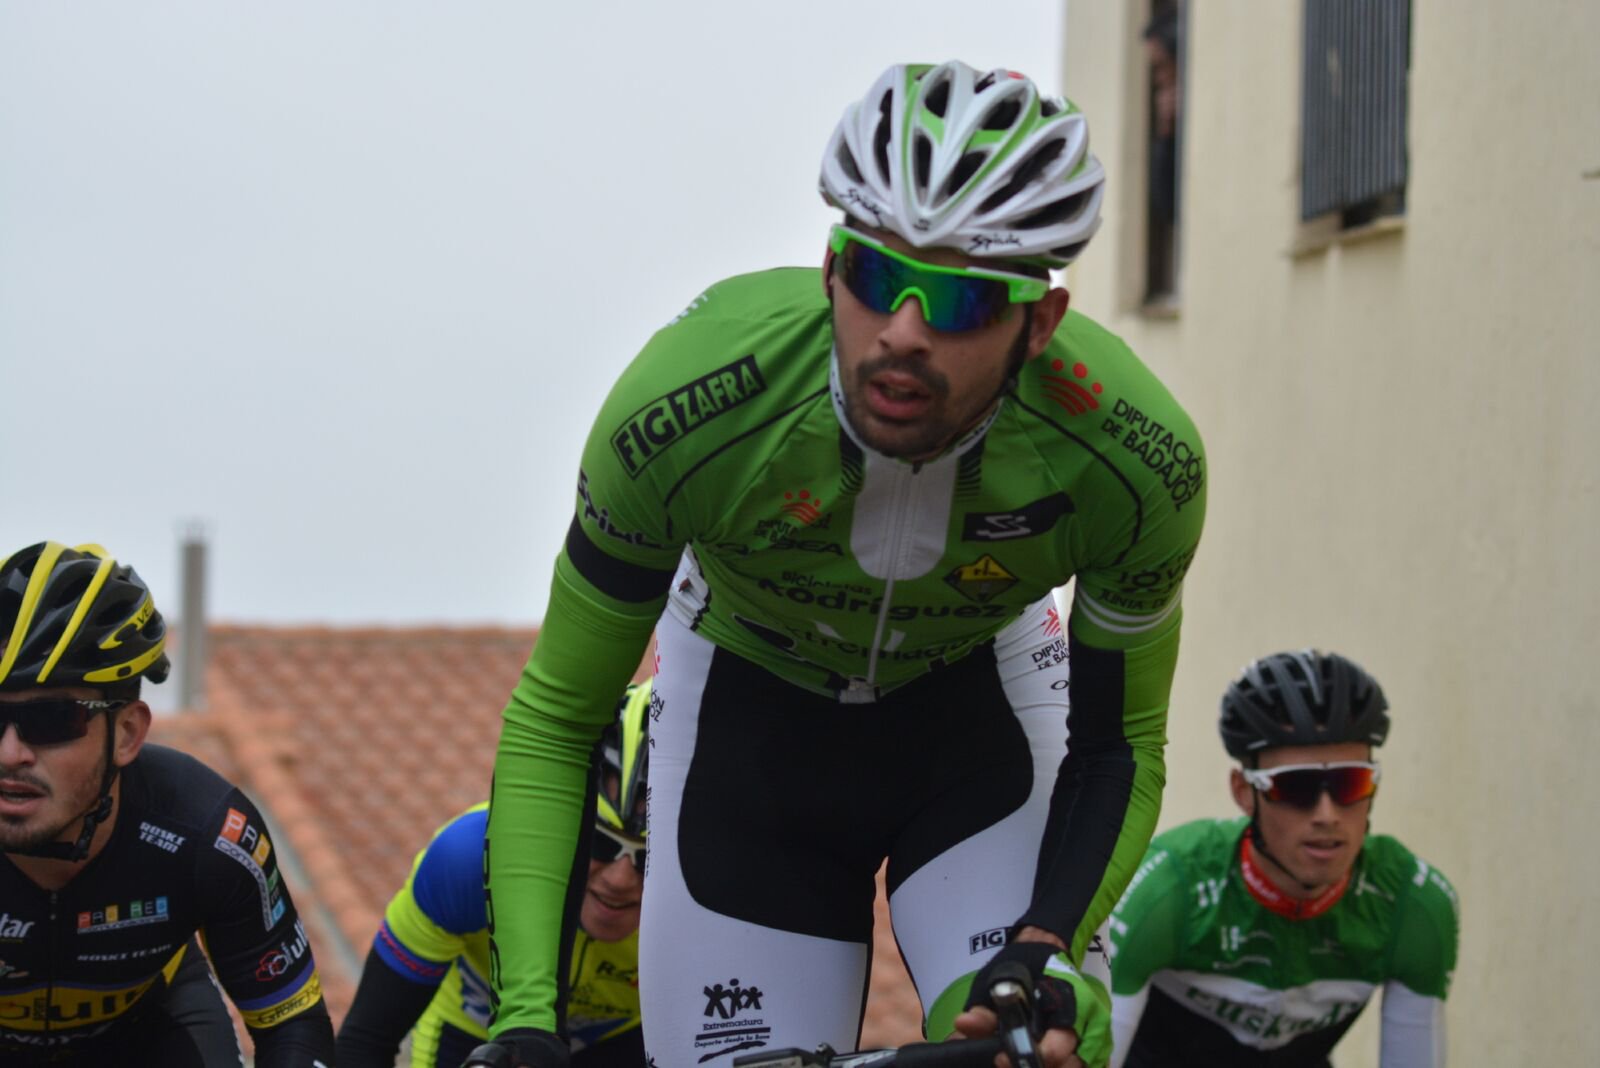 El ciclista castellano-manchego, Jesús Alberto Ruiz